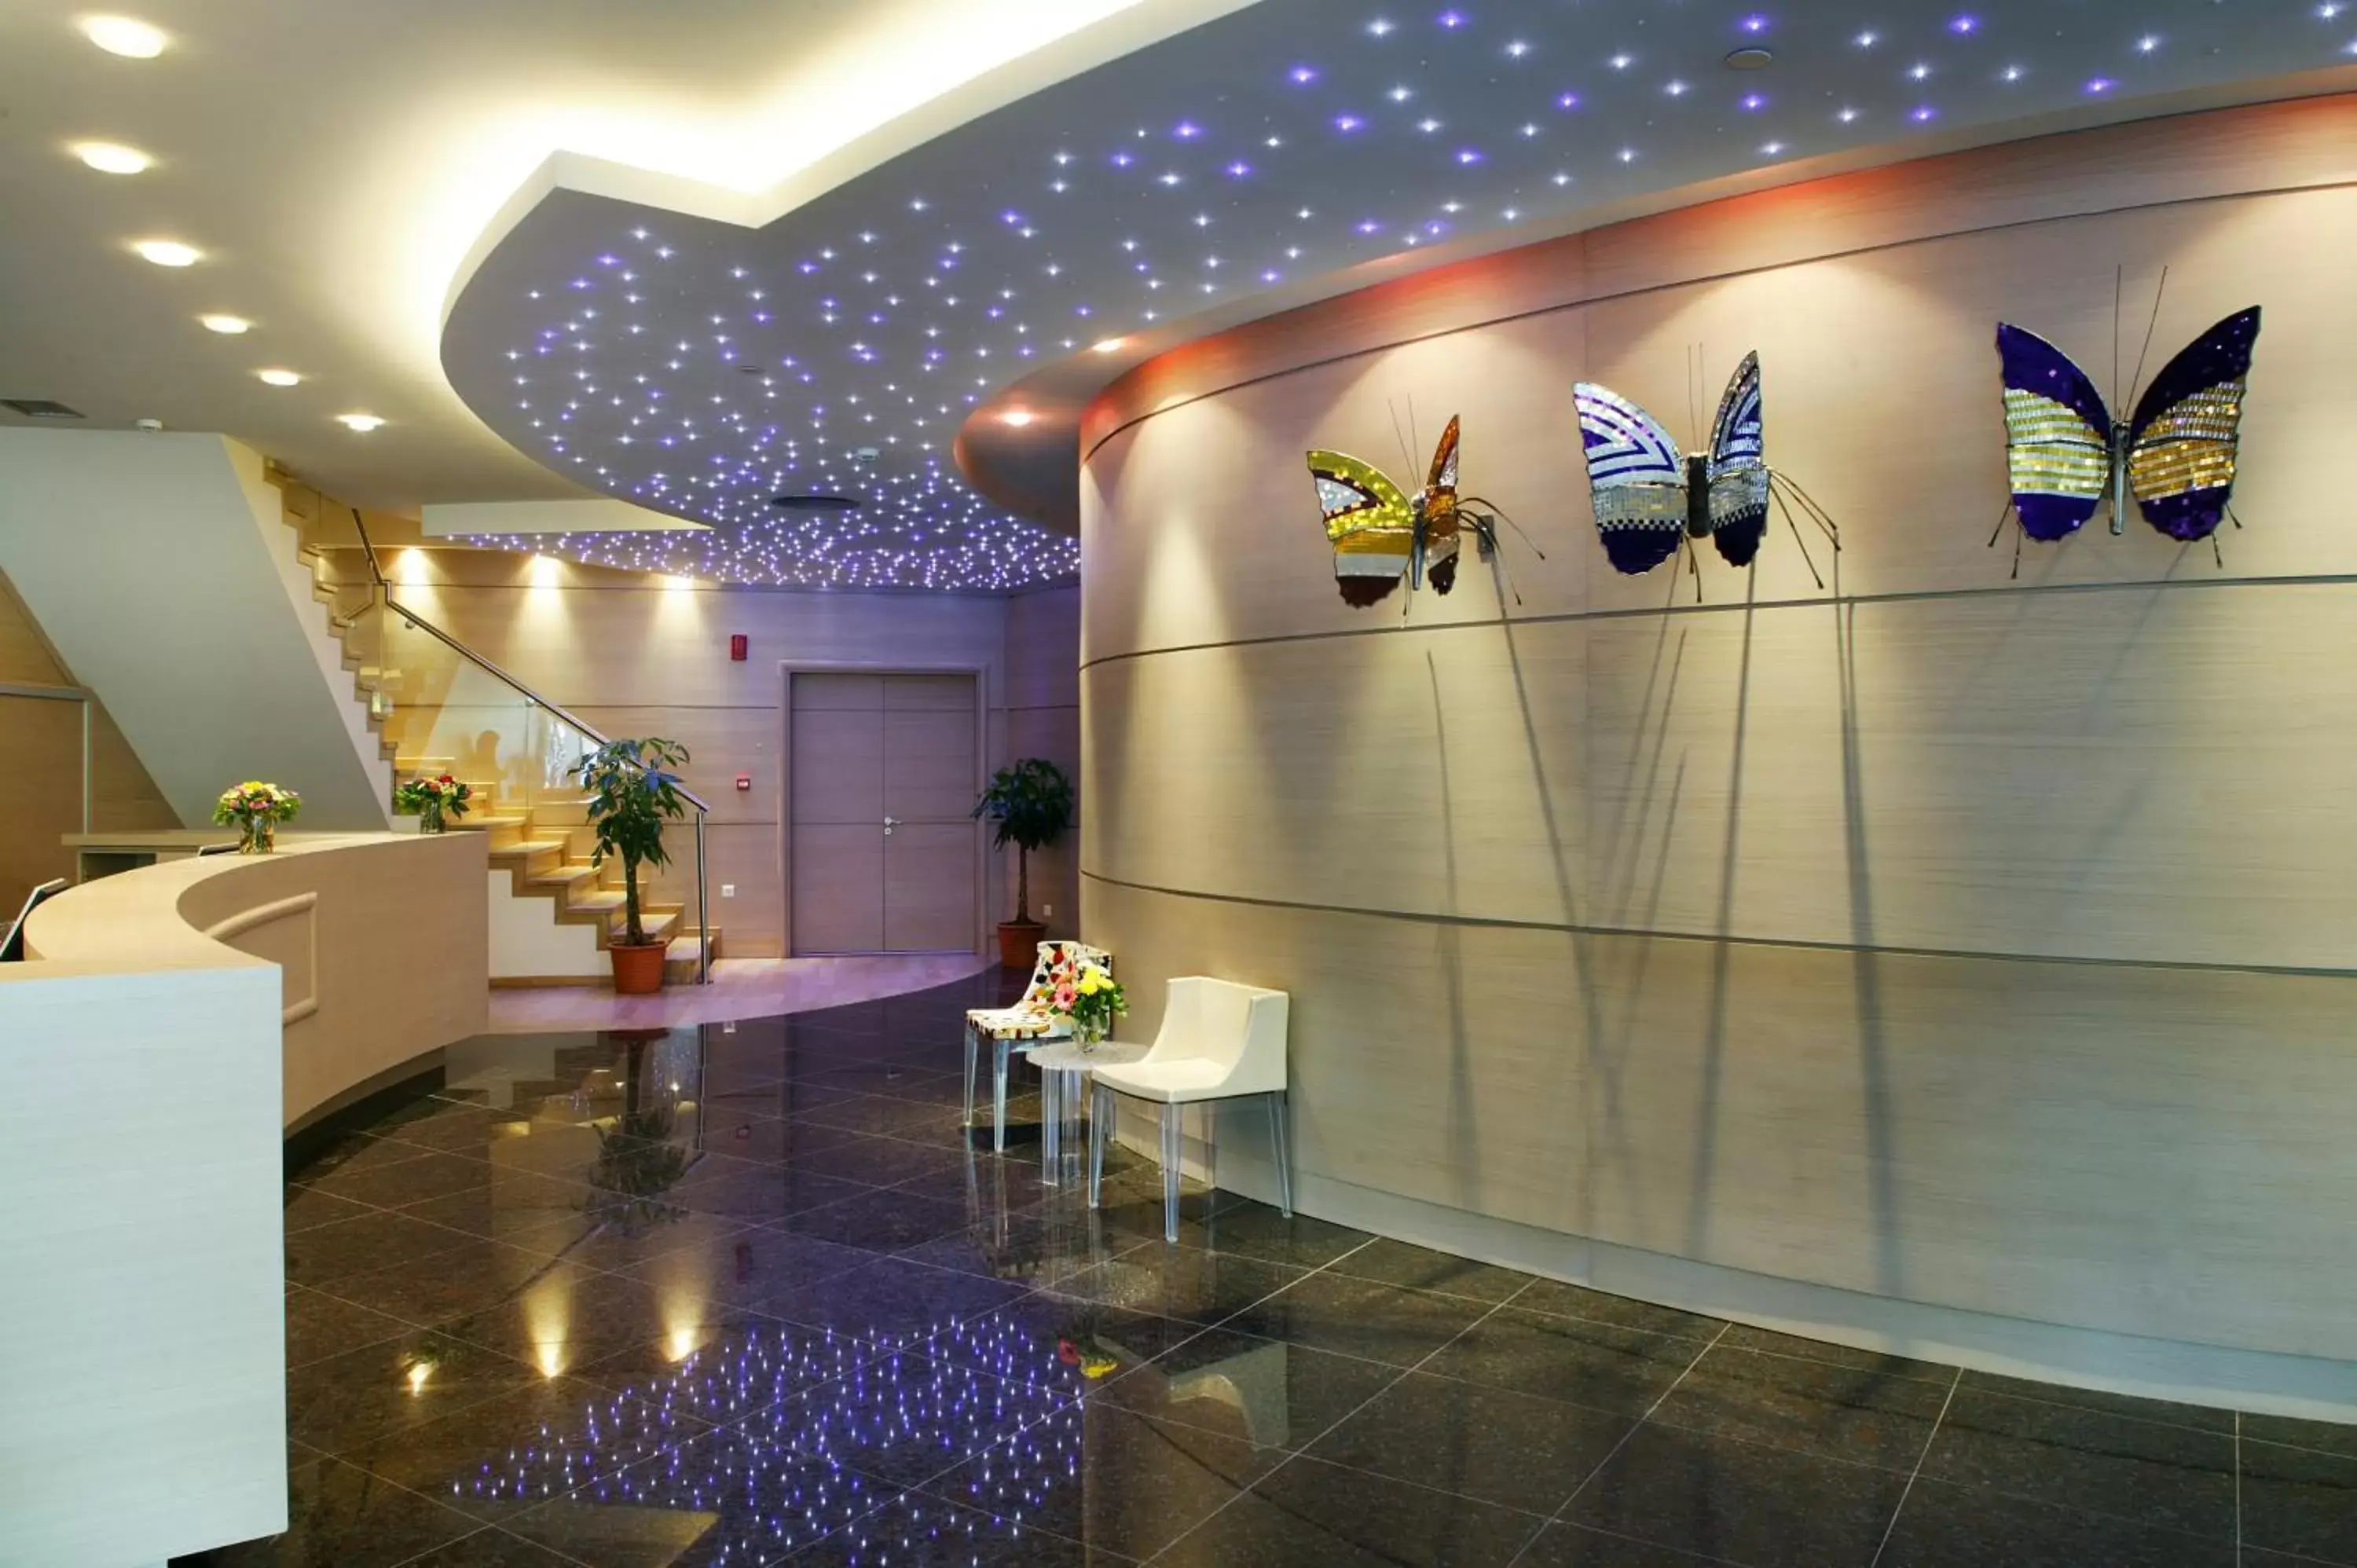 Lobby or reception, Bathroom in Amalia Hotel Athens